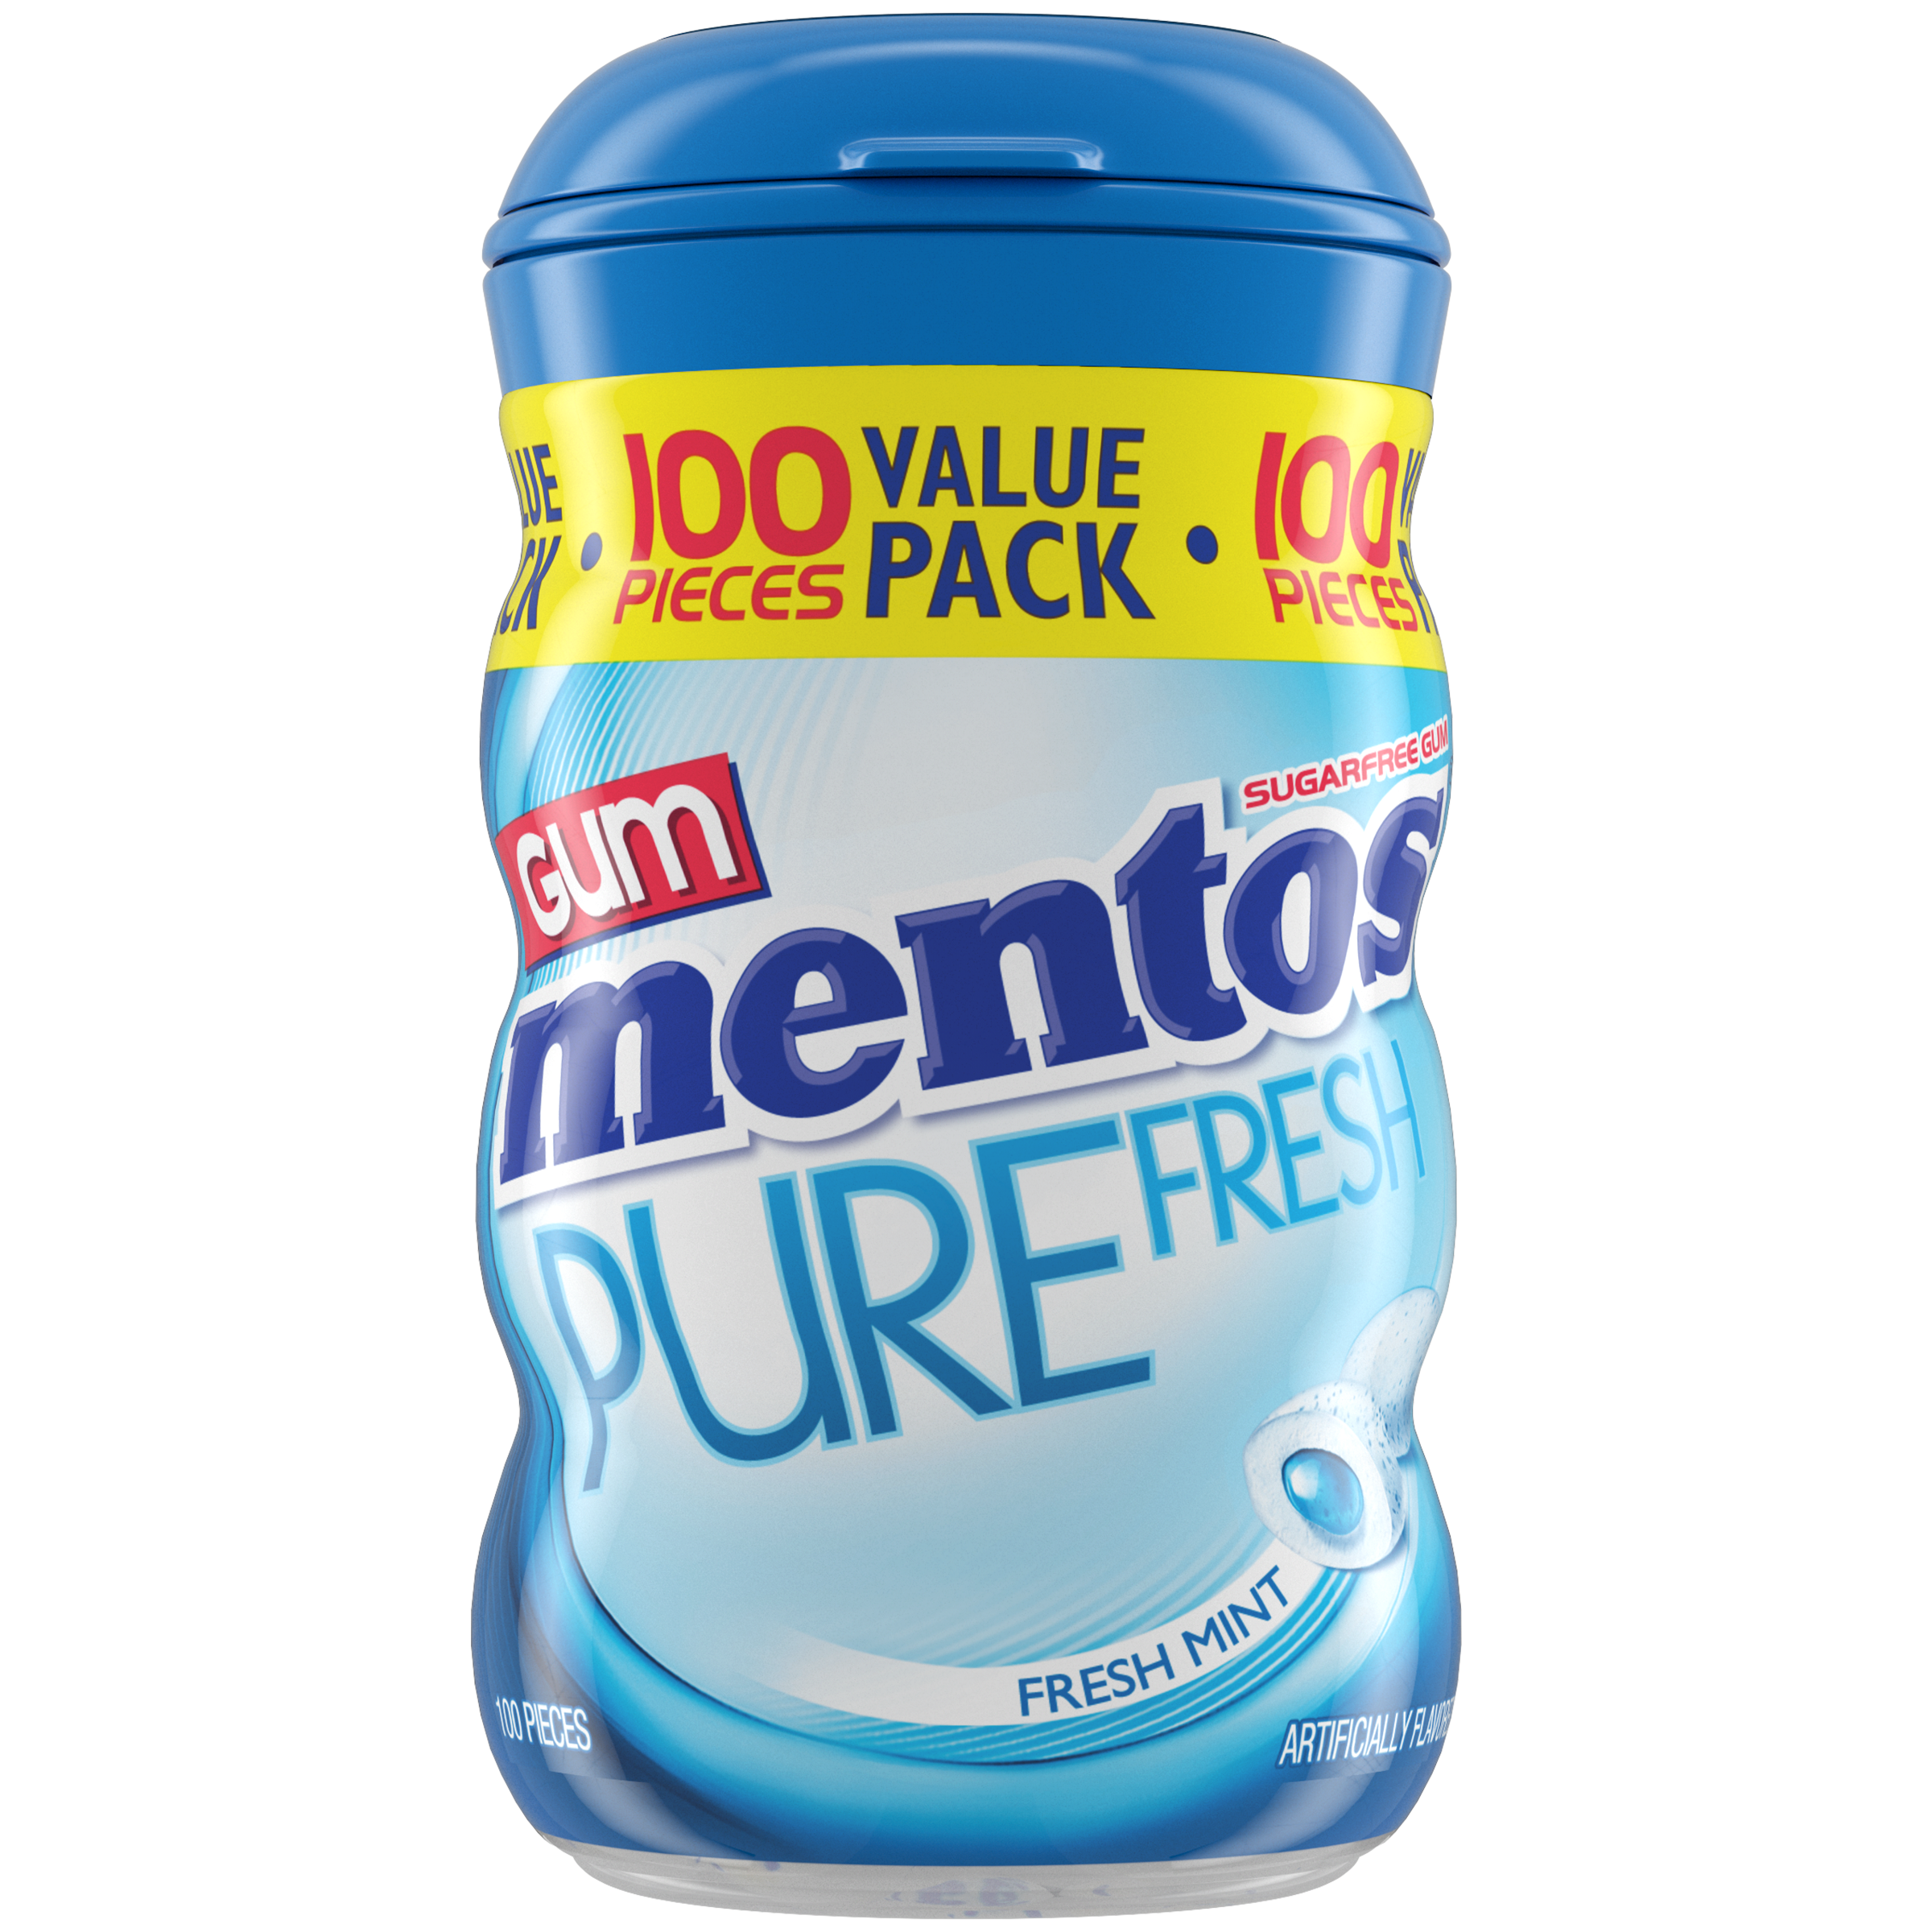 MENTOS GUM - Pure Fresh Reglisse 100G - Lot De 3 - Vendu Par Lot